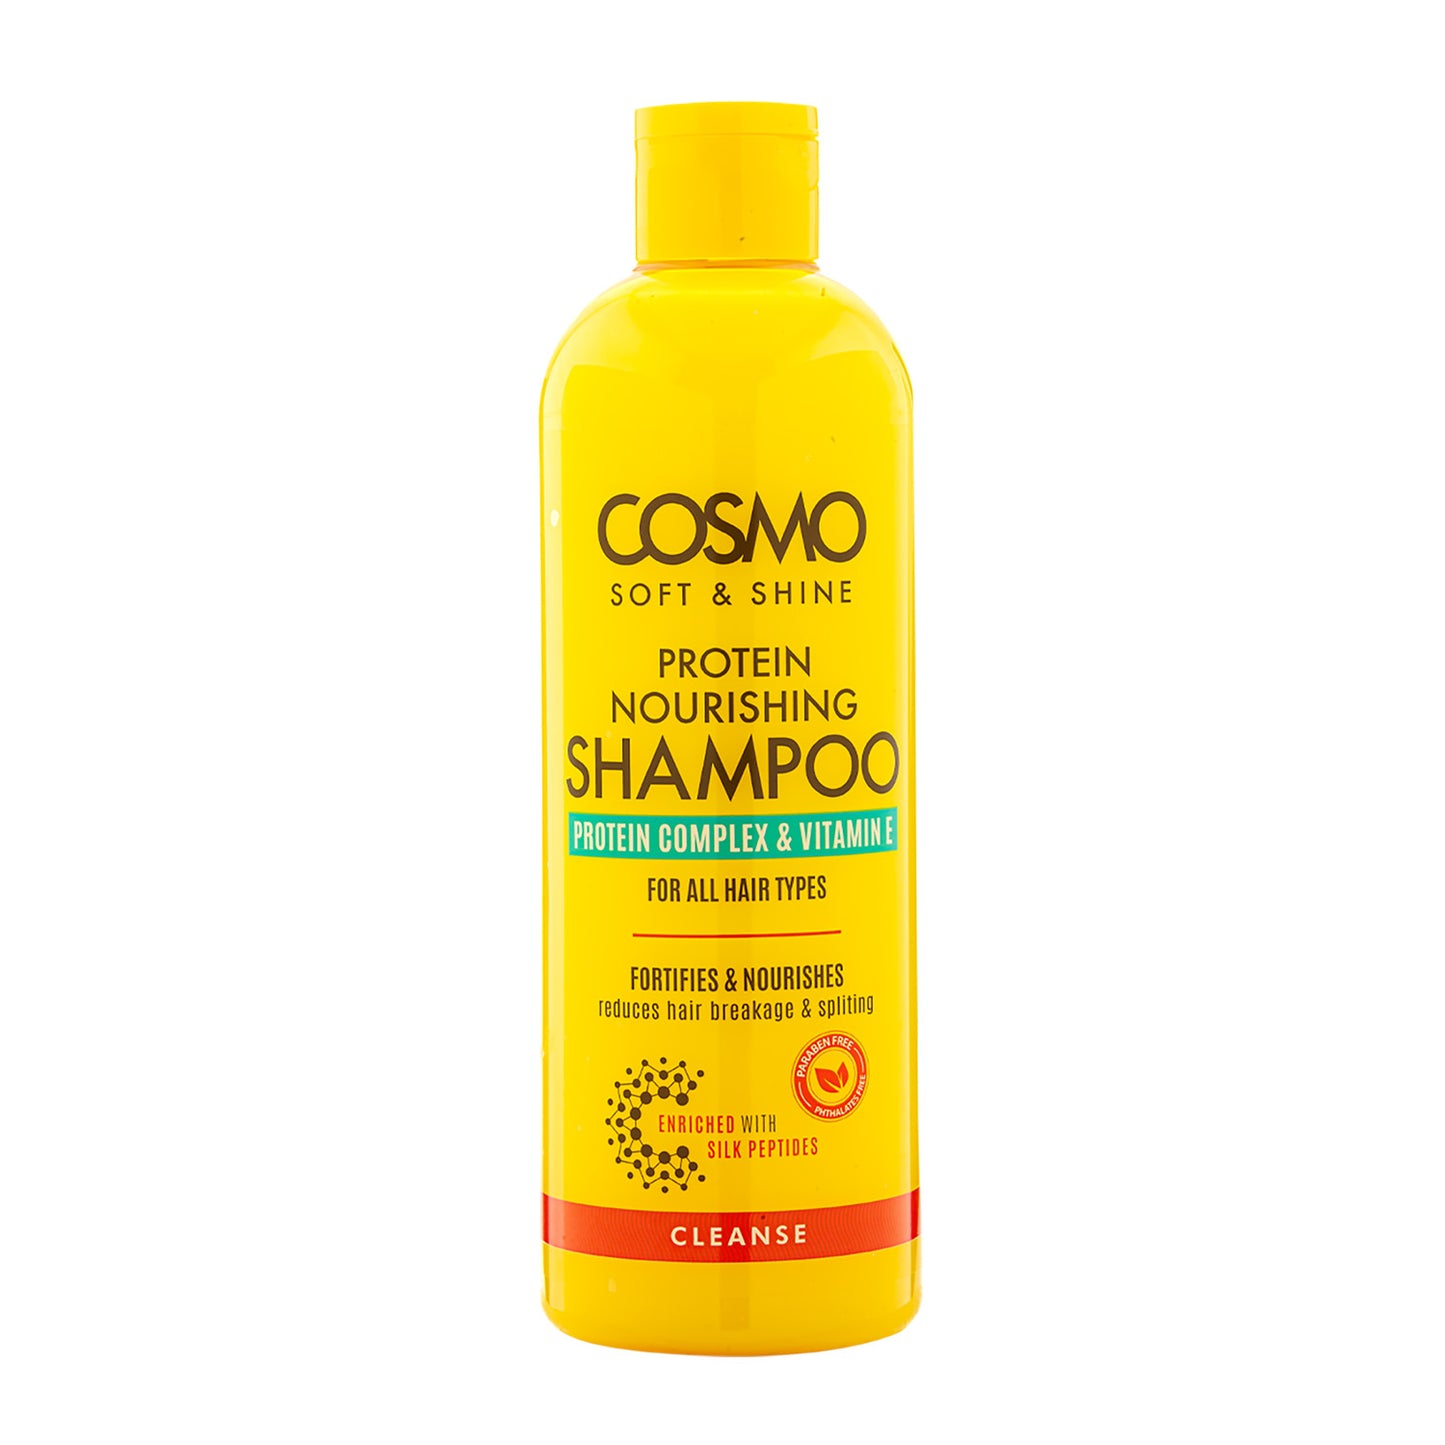 COSMO SOFT & SHINE PROTEIN NOURISHING SHAMPOO – 480ML